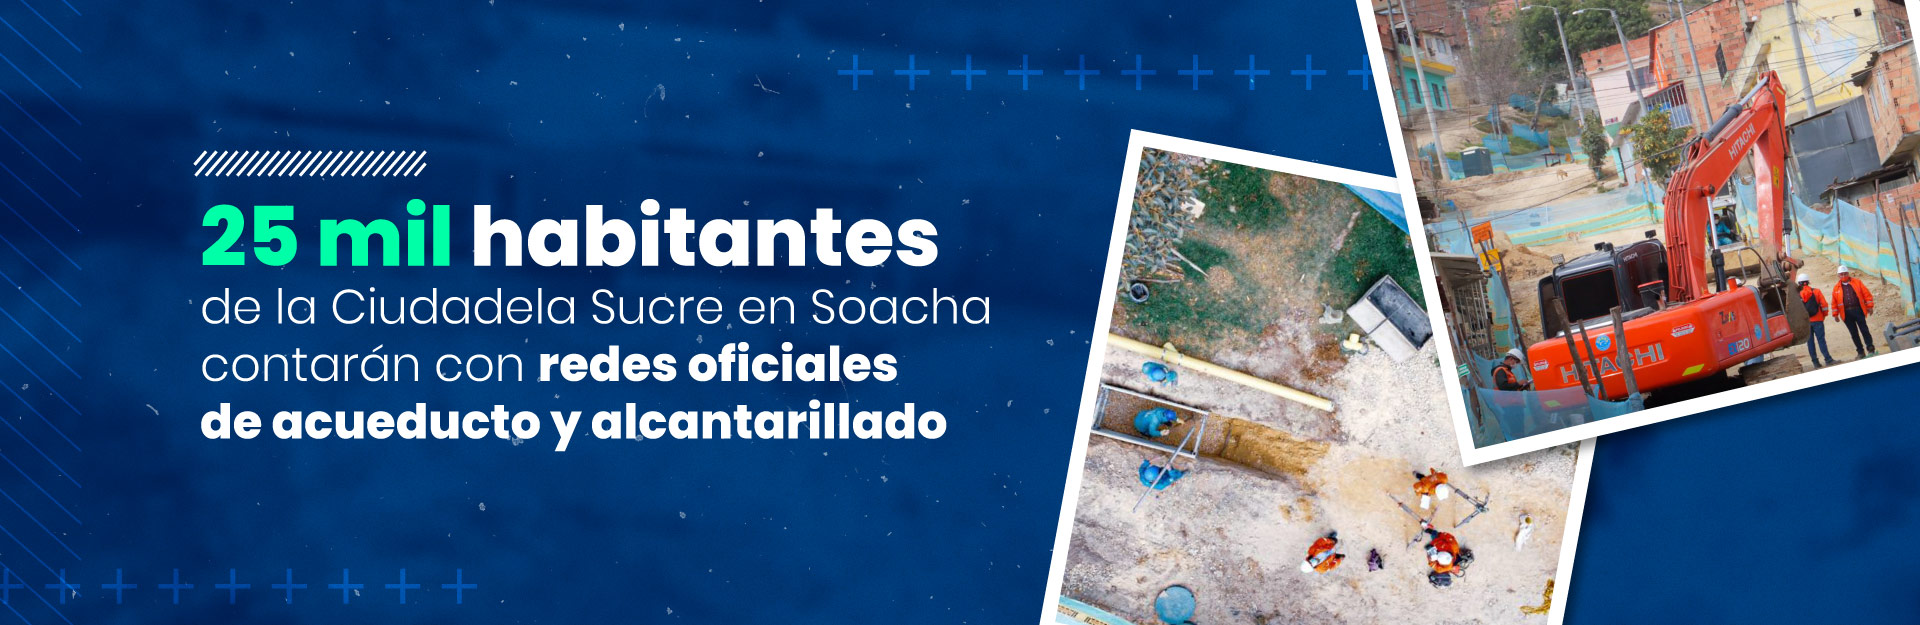 25 mil habitantes de la Ciudadela Sucre en Soacha contarán con redes oficiales de acueducto y alcantarillado